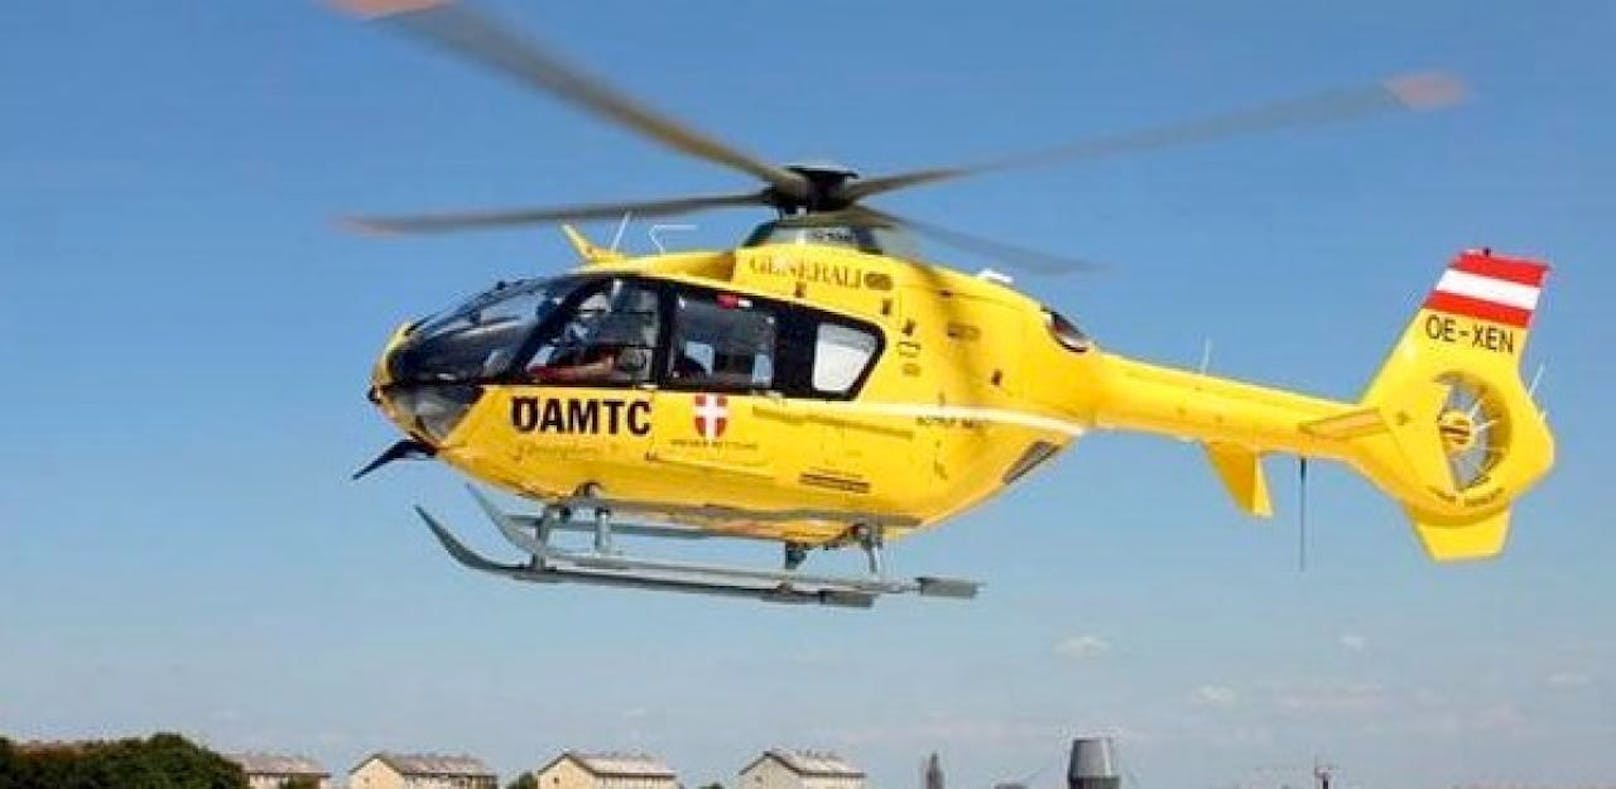 Mann stürzte über Treppe - per Helikopter ins Spital